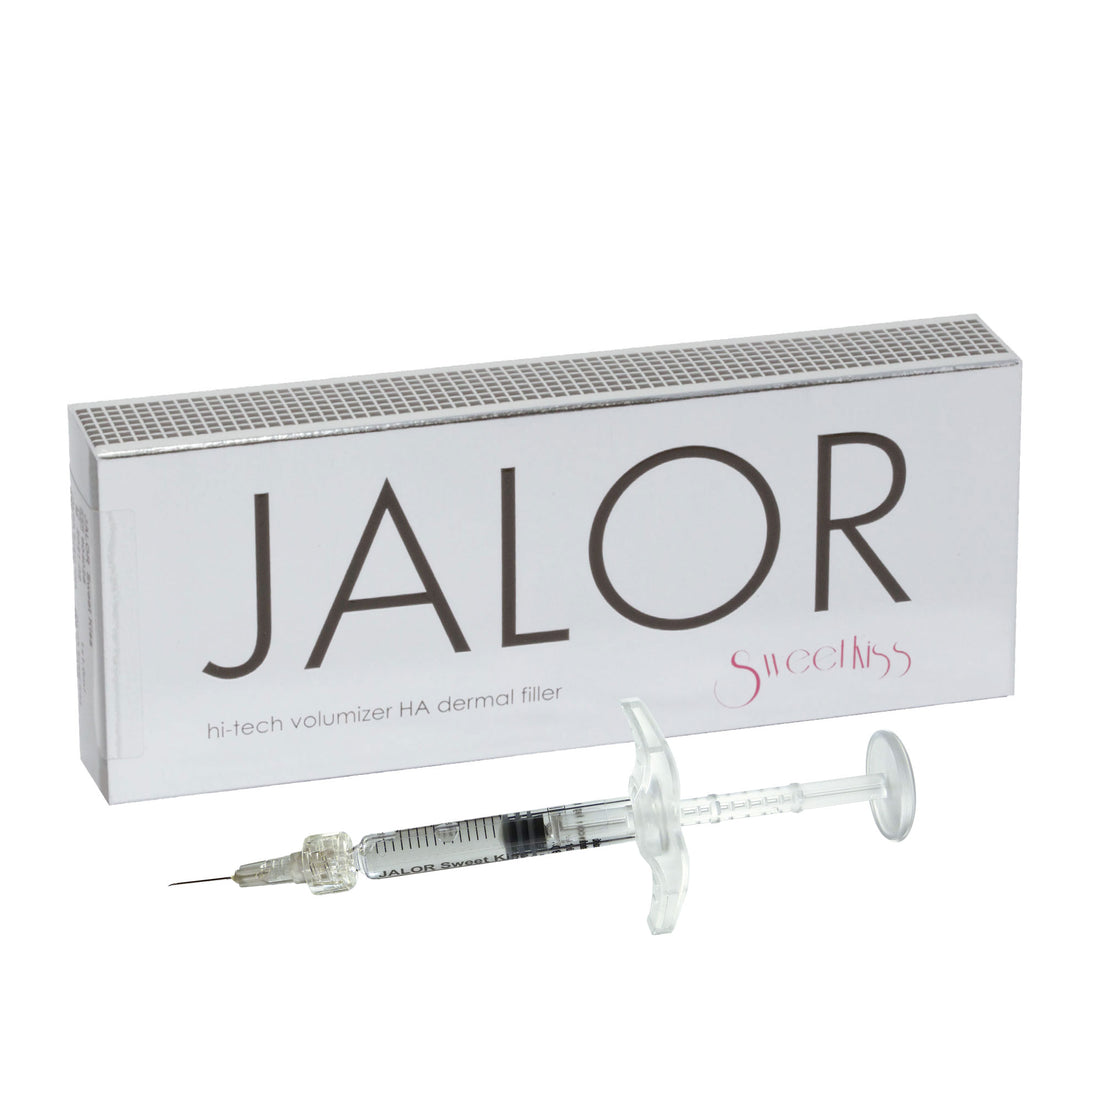 JALOR SWEET KISS - Δερματικό Γεμιστικό Υαλουρονικού Οξέος που δίνει όγκο